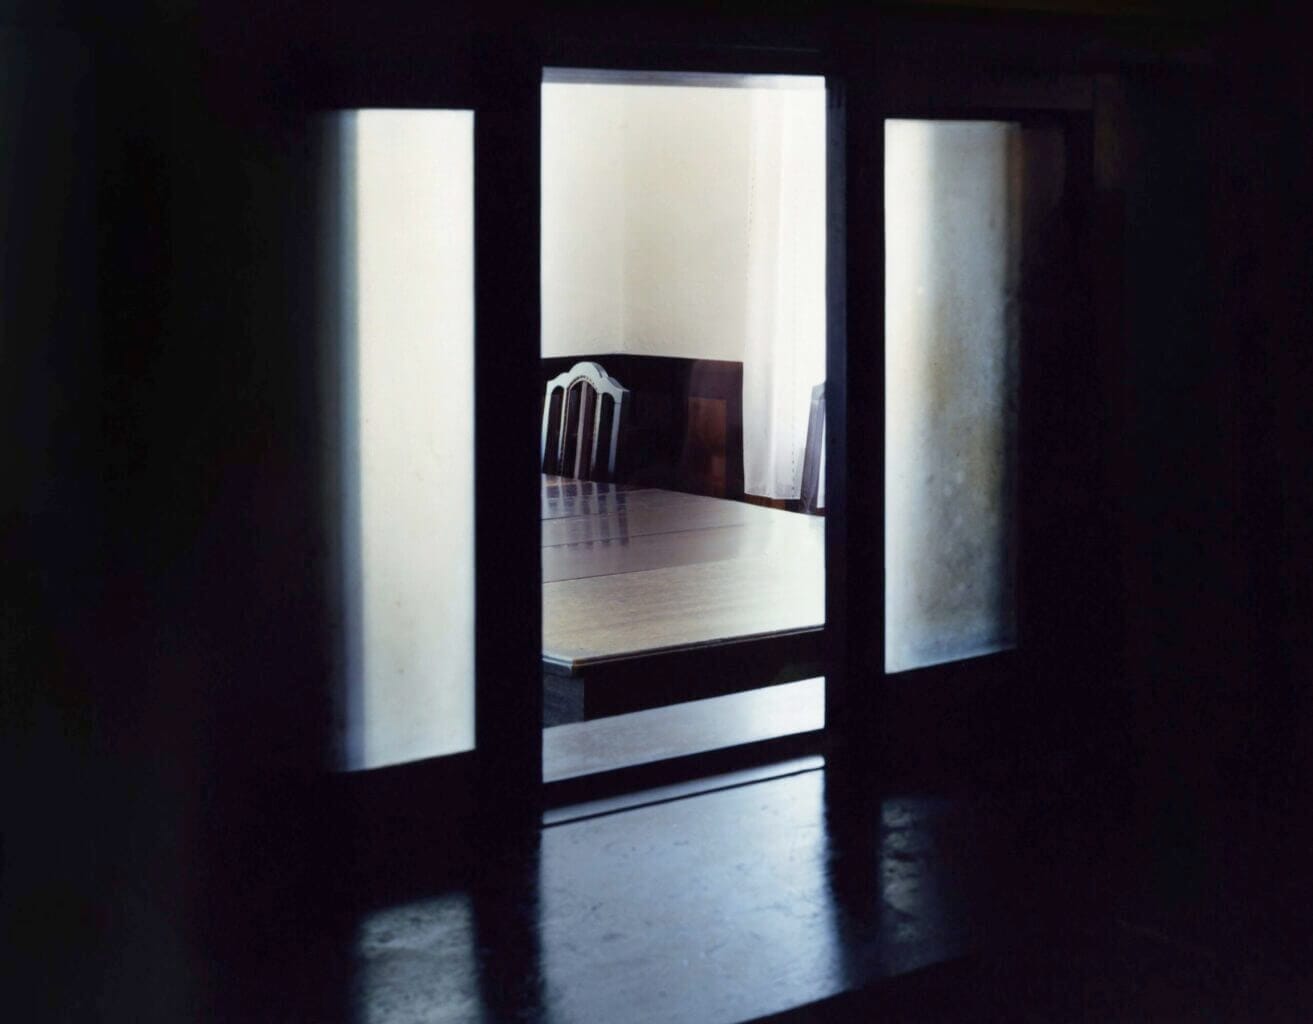 大坪晶の個展「カーテンの向こう側」、N projectにて。接収住宅とそこにまつわる歴史の痕跡をテーマとした写真作品「Shadow in the House」シリーズなどを展示。